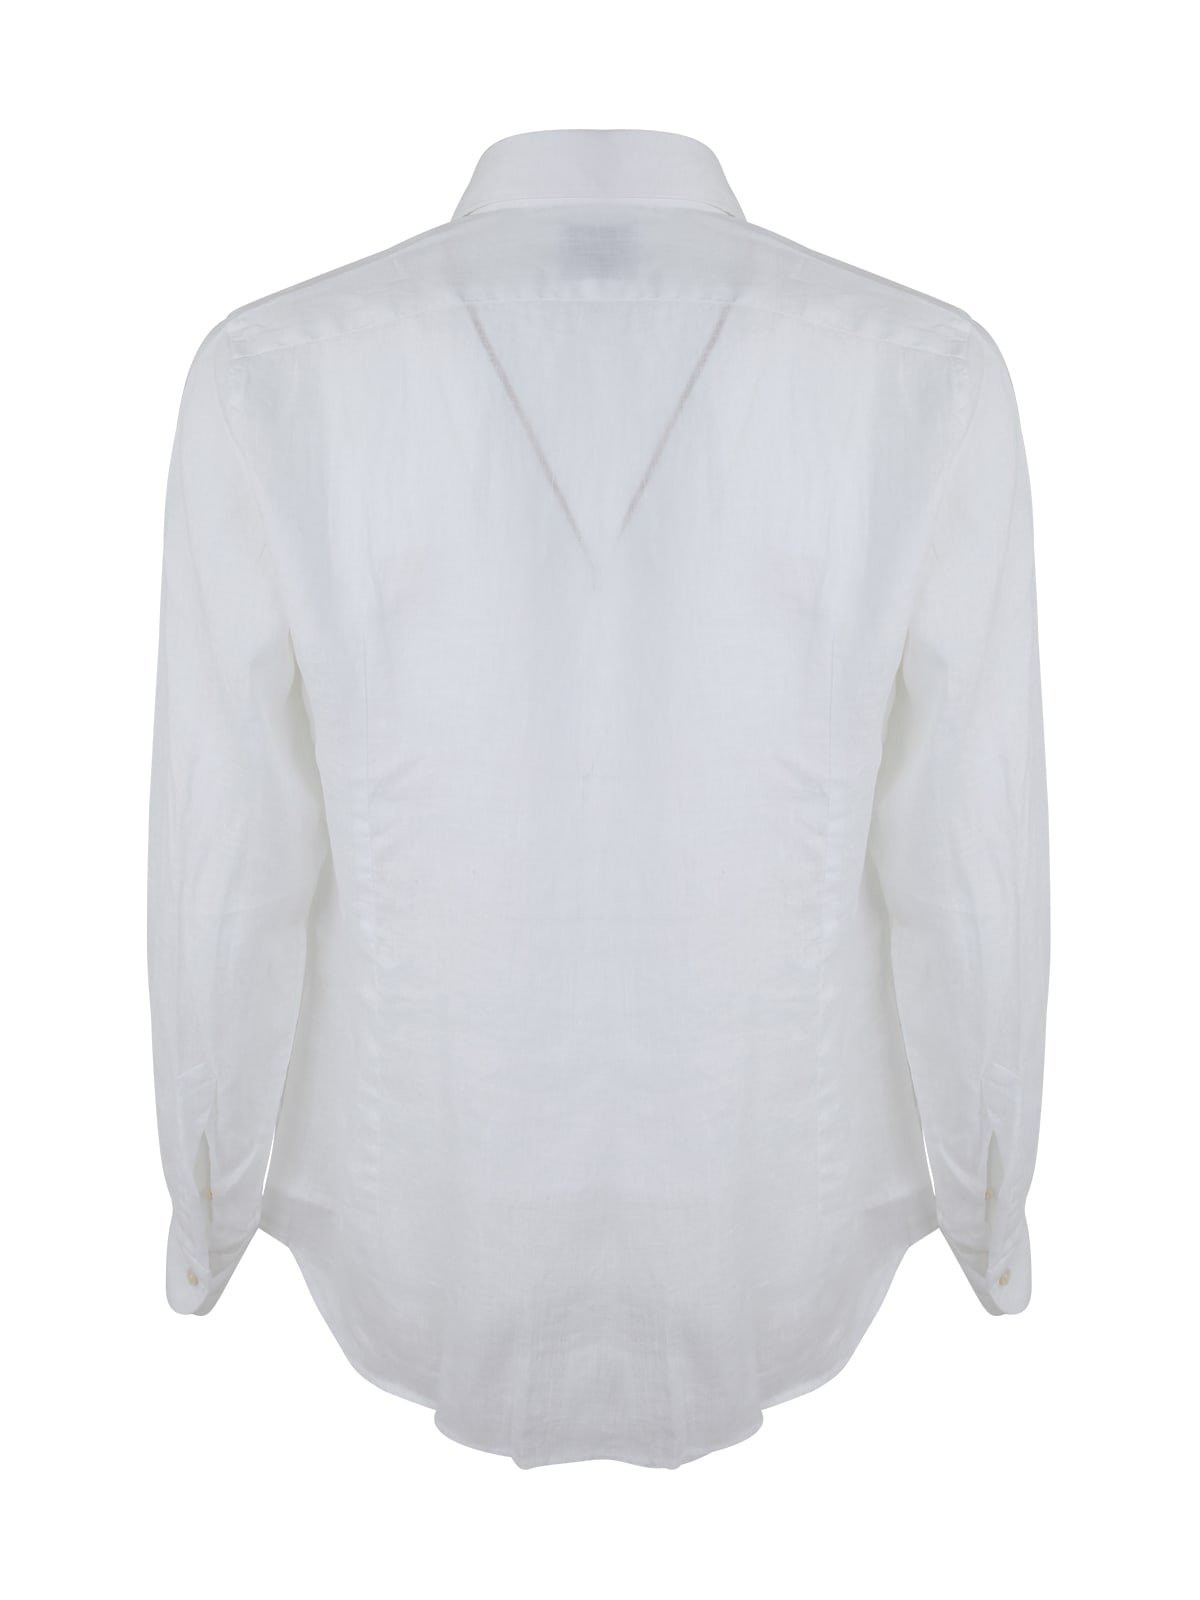 Shop Dnl Linen Classic Shirt In White